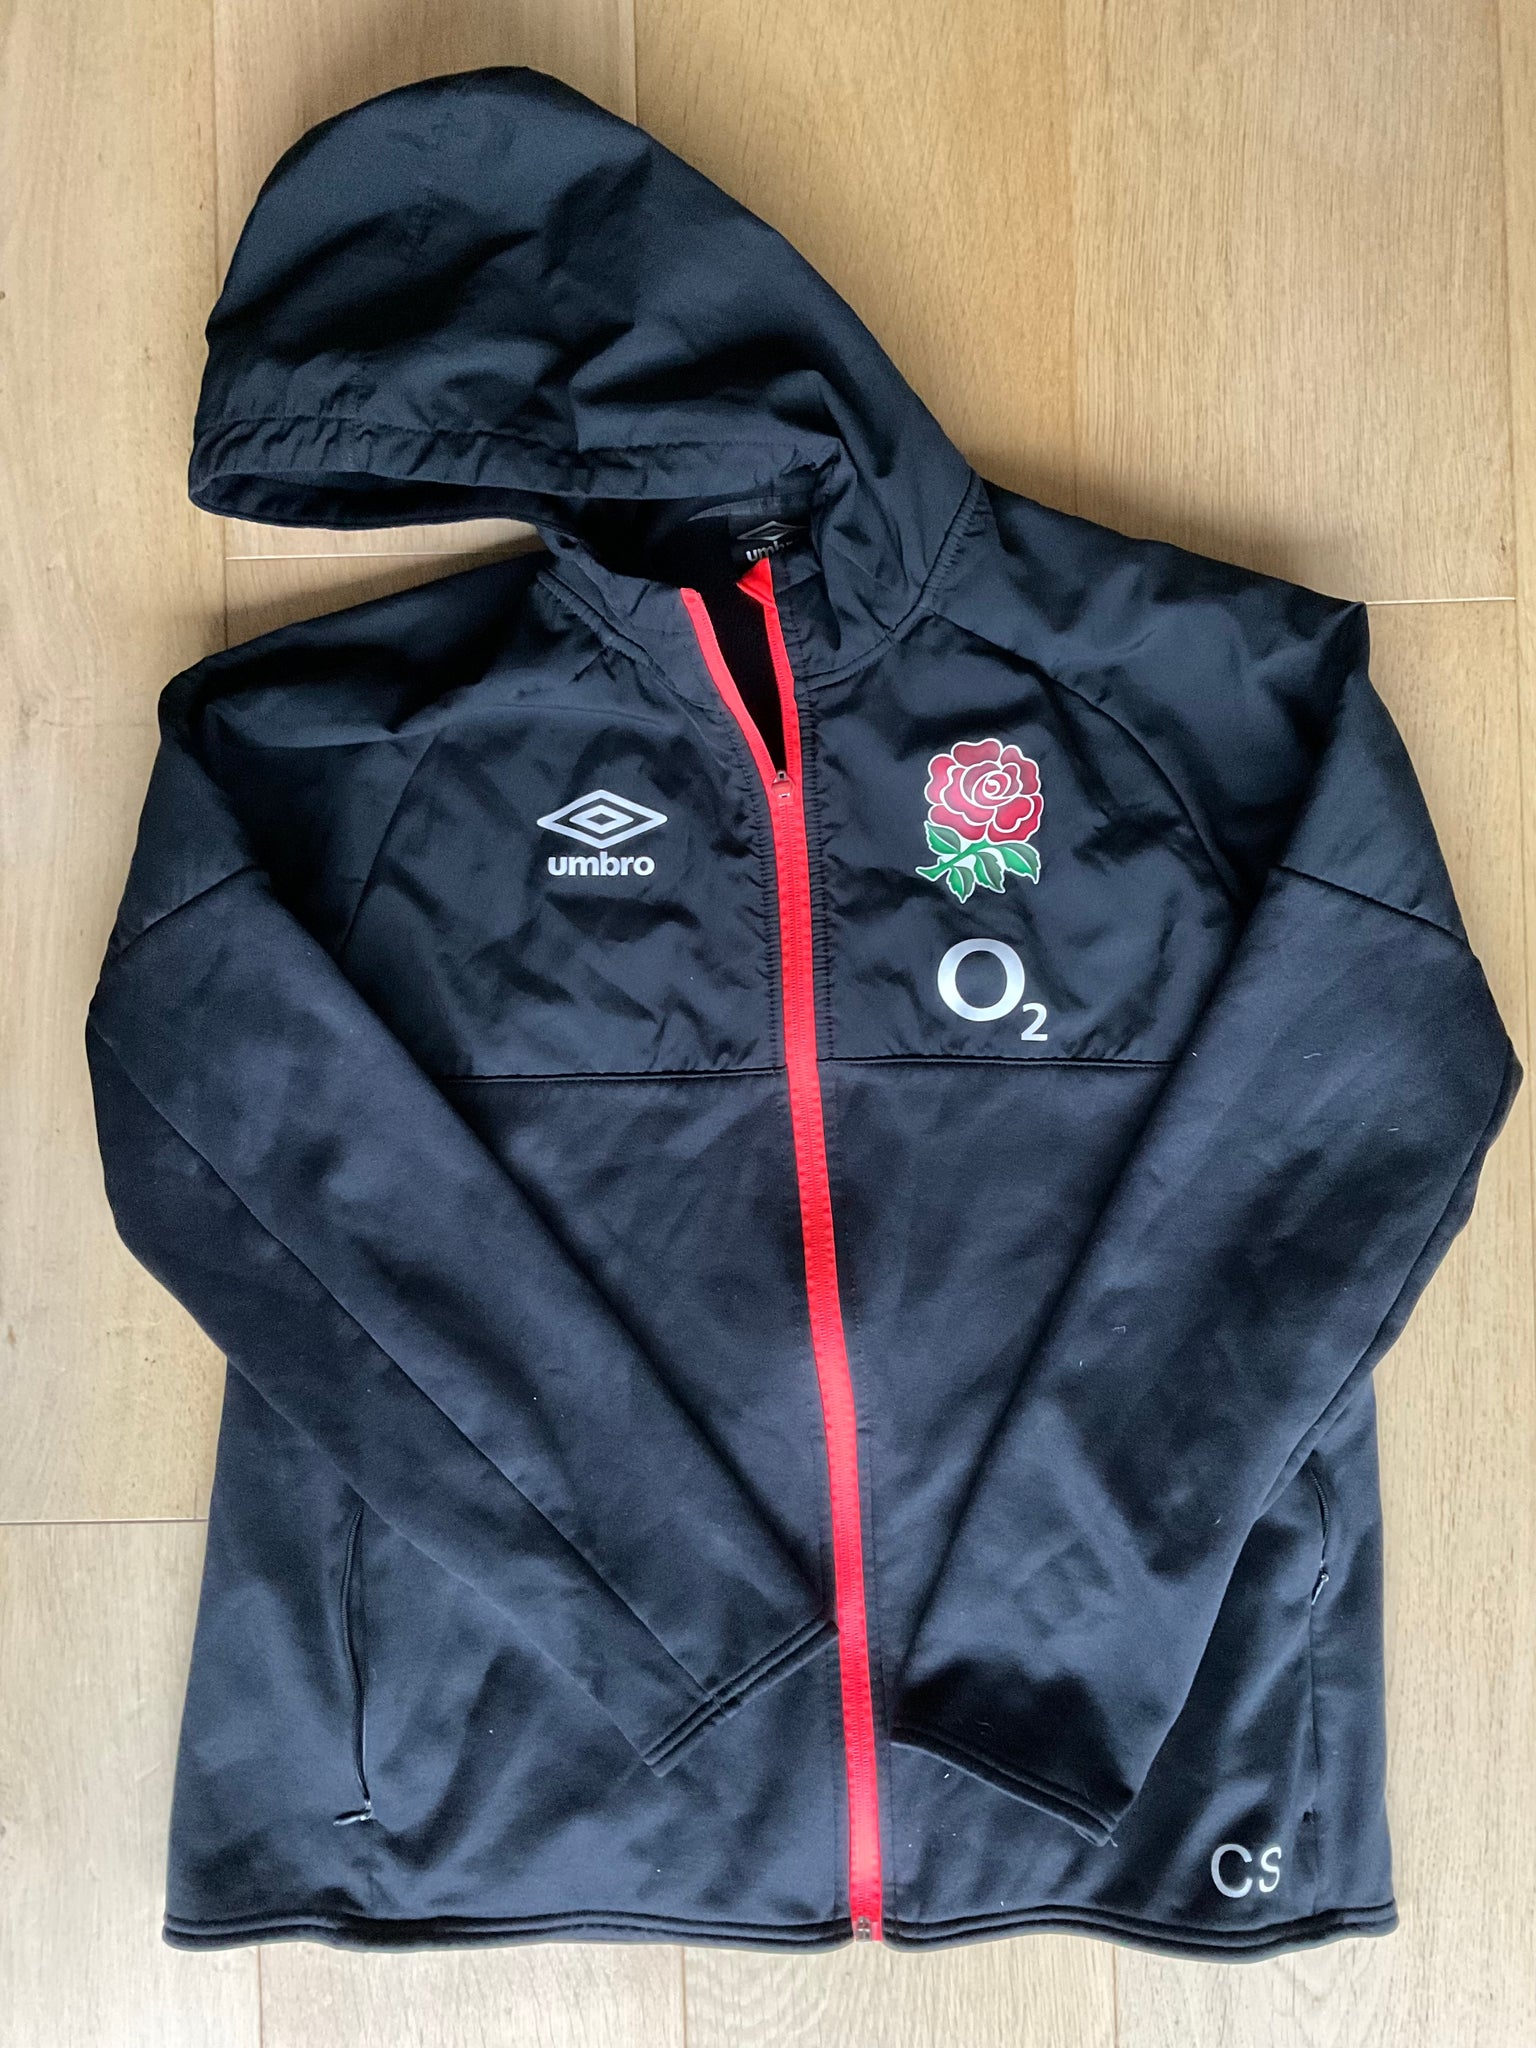 CS Initials - England Rugby Full Zip Fleece Lined Jacket [Black, Grey & Orange]